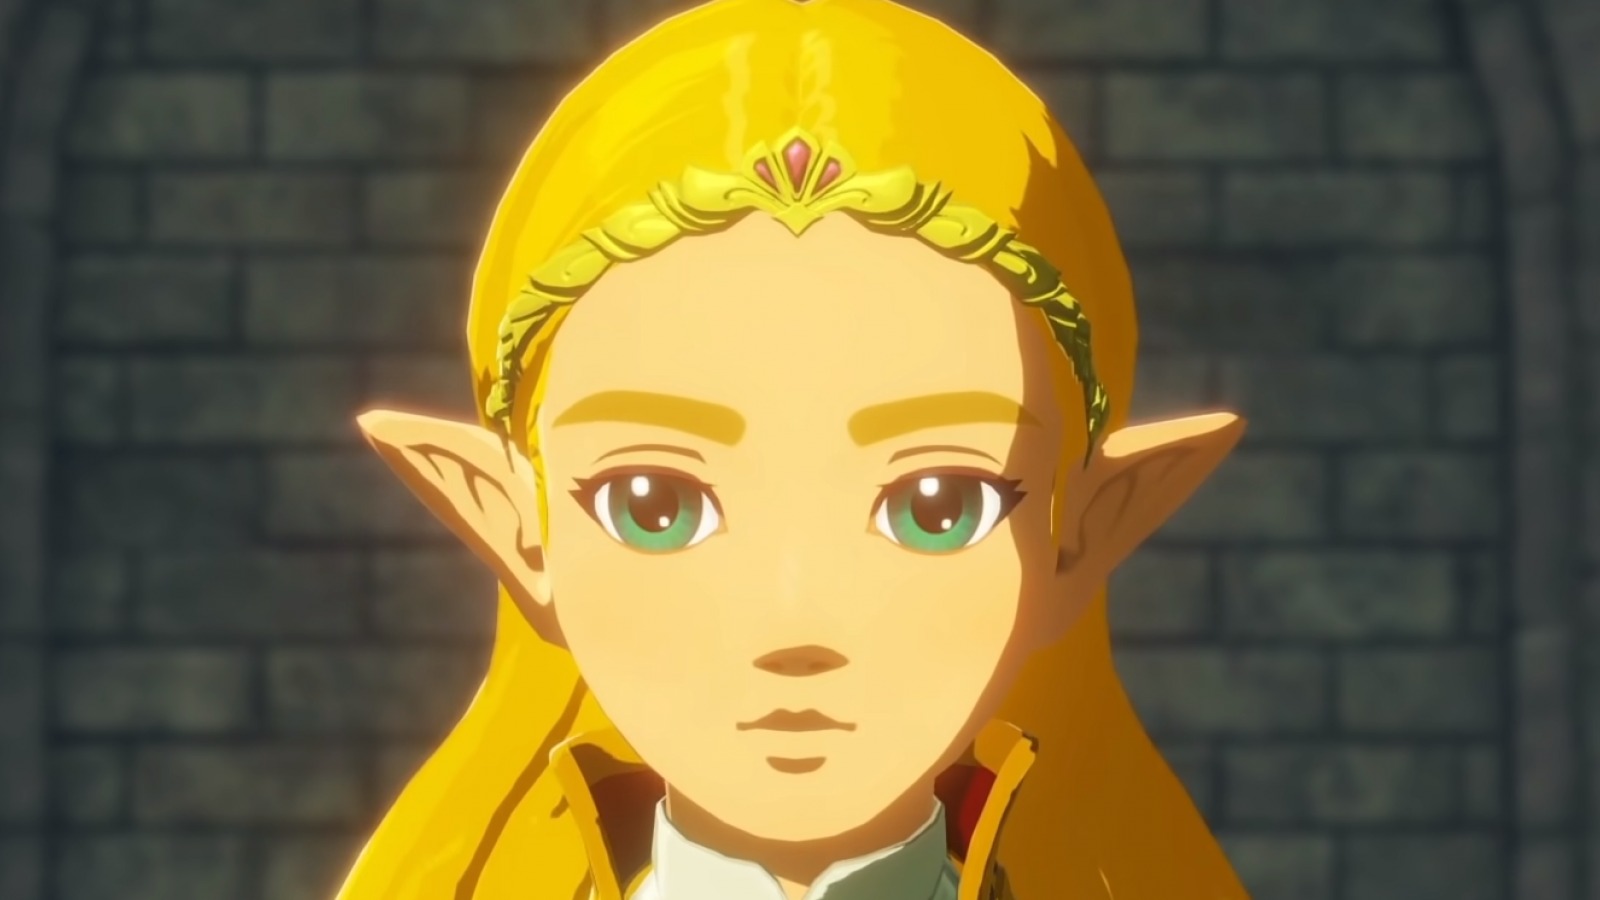 Zelda Universe - The Legend of Zelda fan community